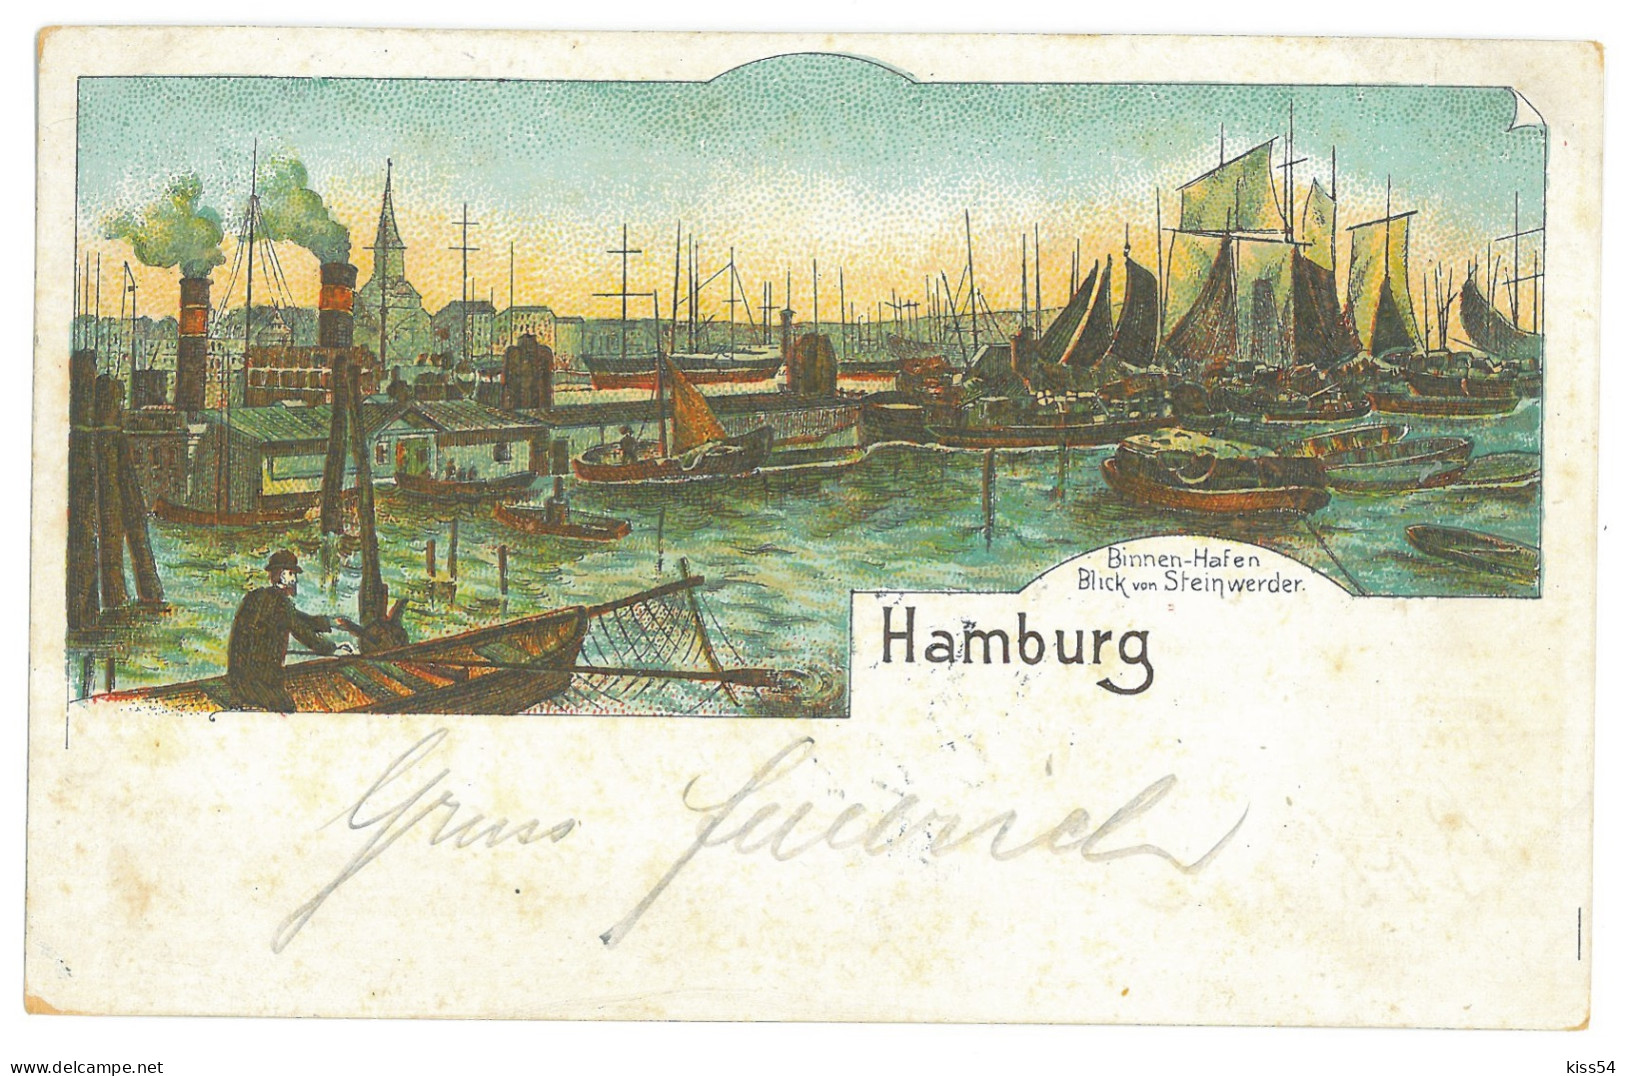 GER 34 - 16917 HAMBURG, Litho, Germany - Old Postcard - Used - 1902 - Harburg